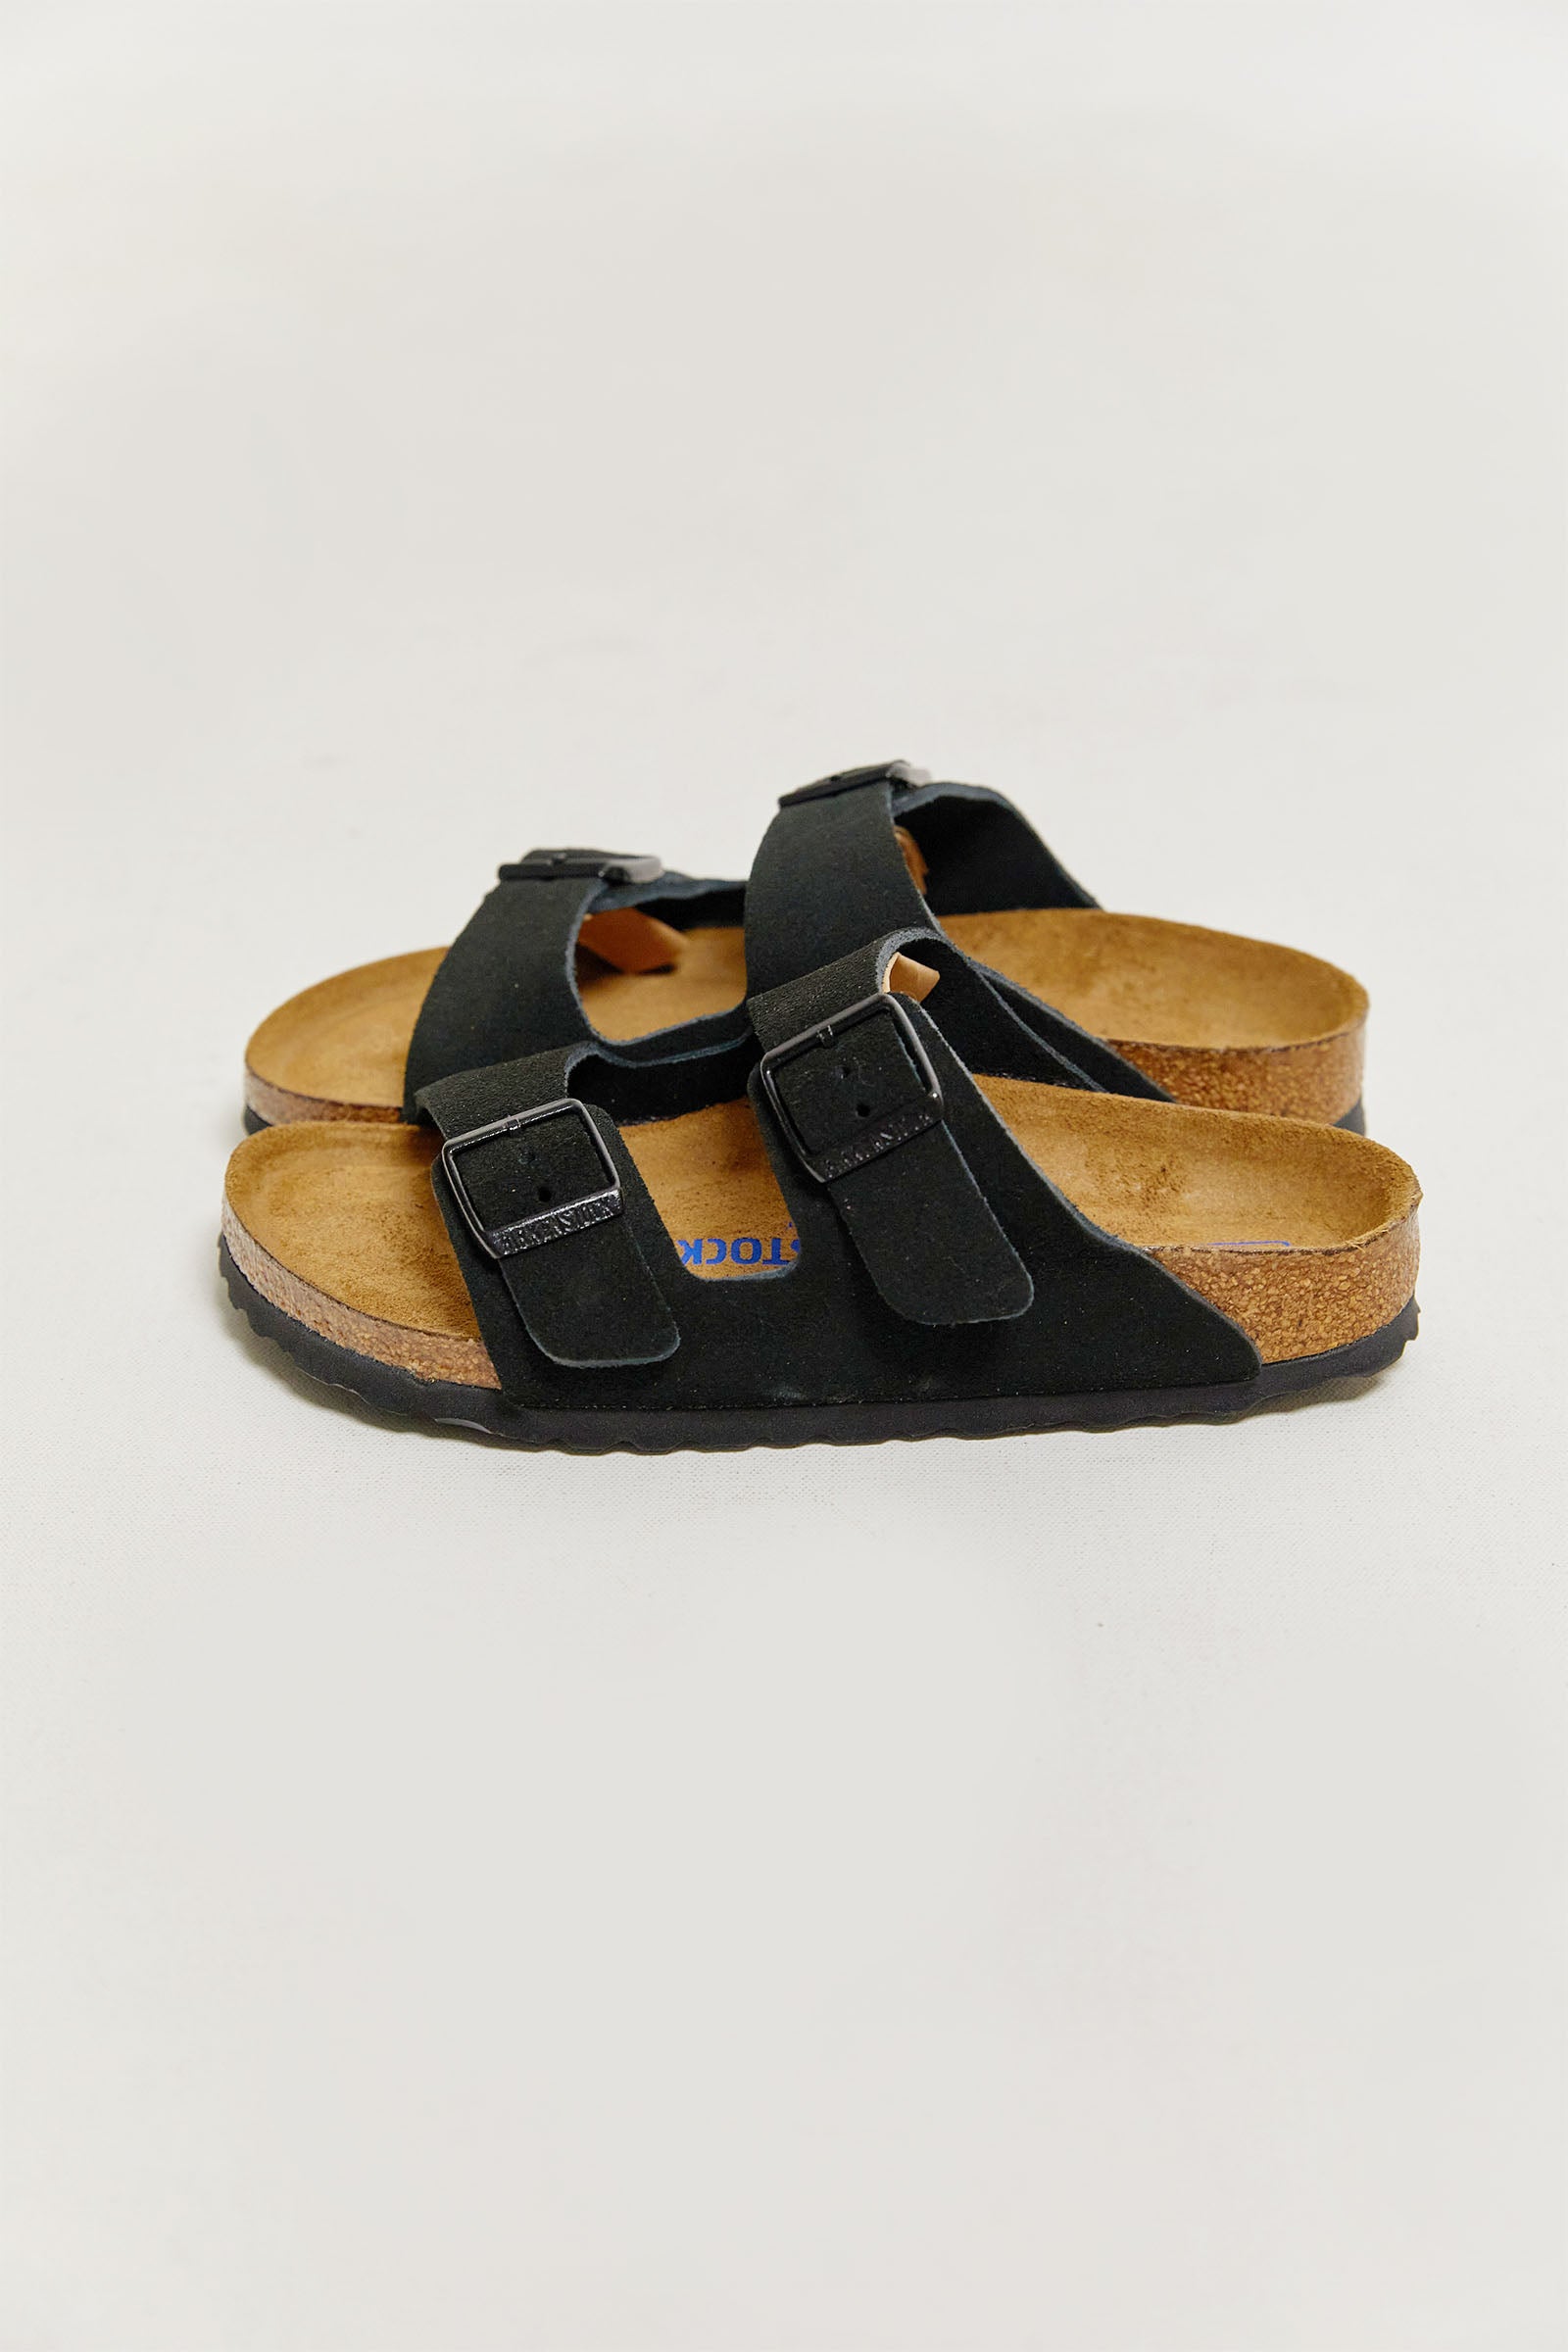 birkenstock arizona suede leather sandals.